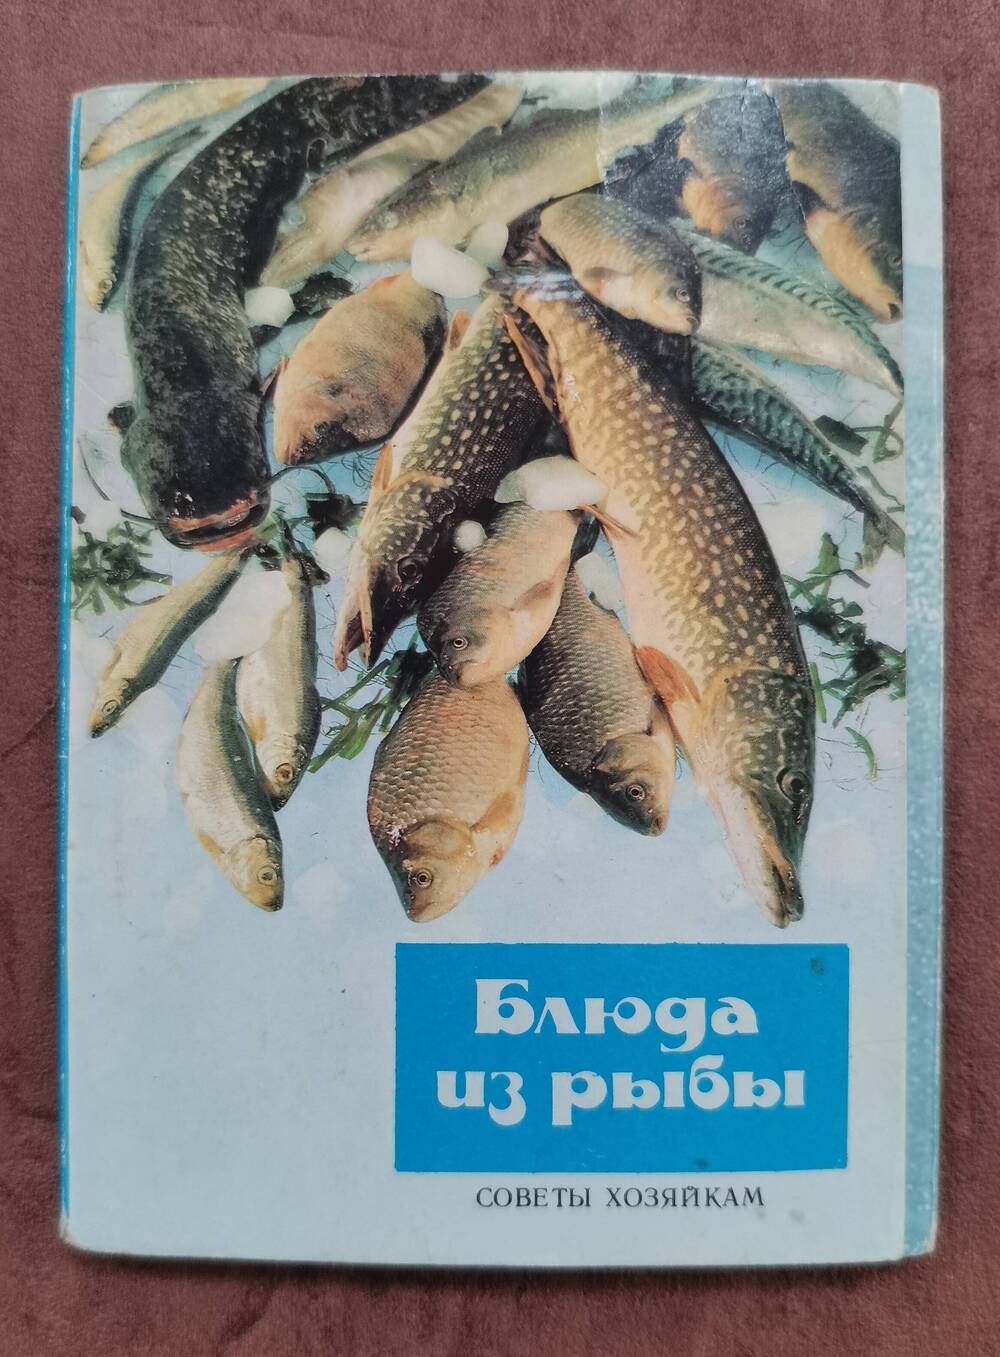 Открытка «Крабовые палочки в кляре». Из комплекта открыток «Советы хозяйкам. Блюда из рыбы».